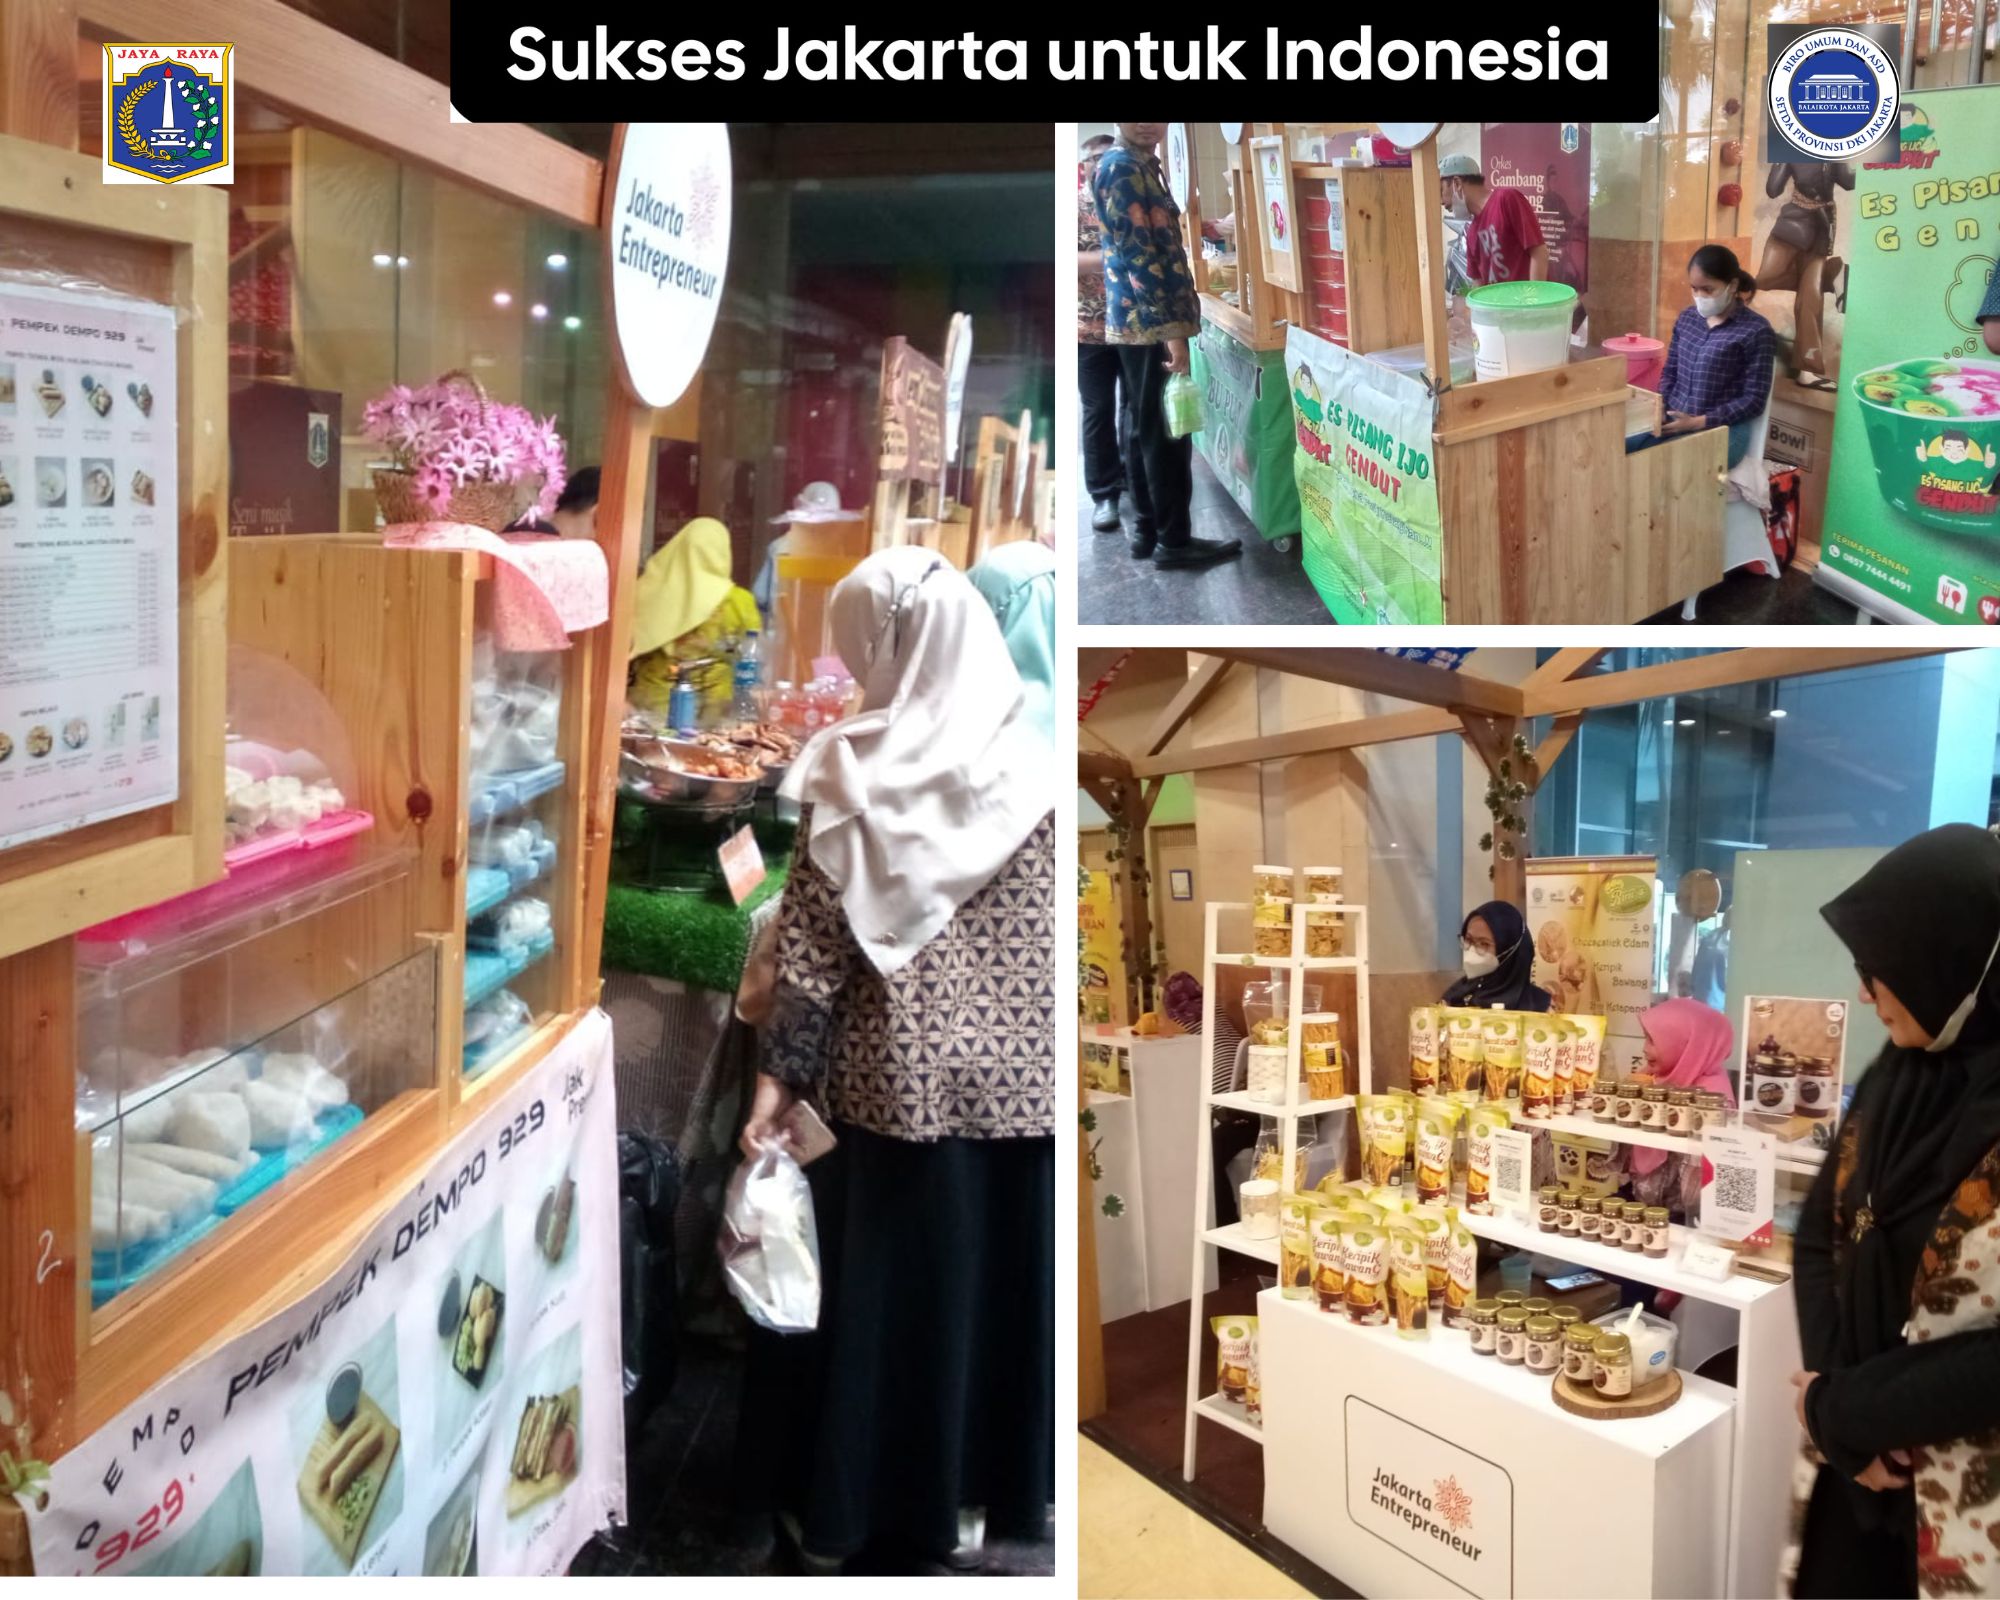 Bazar di Balaikota DKI Jakarta